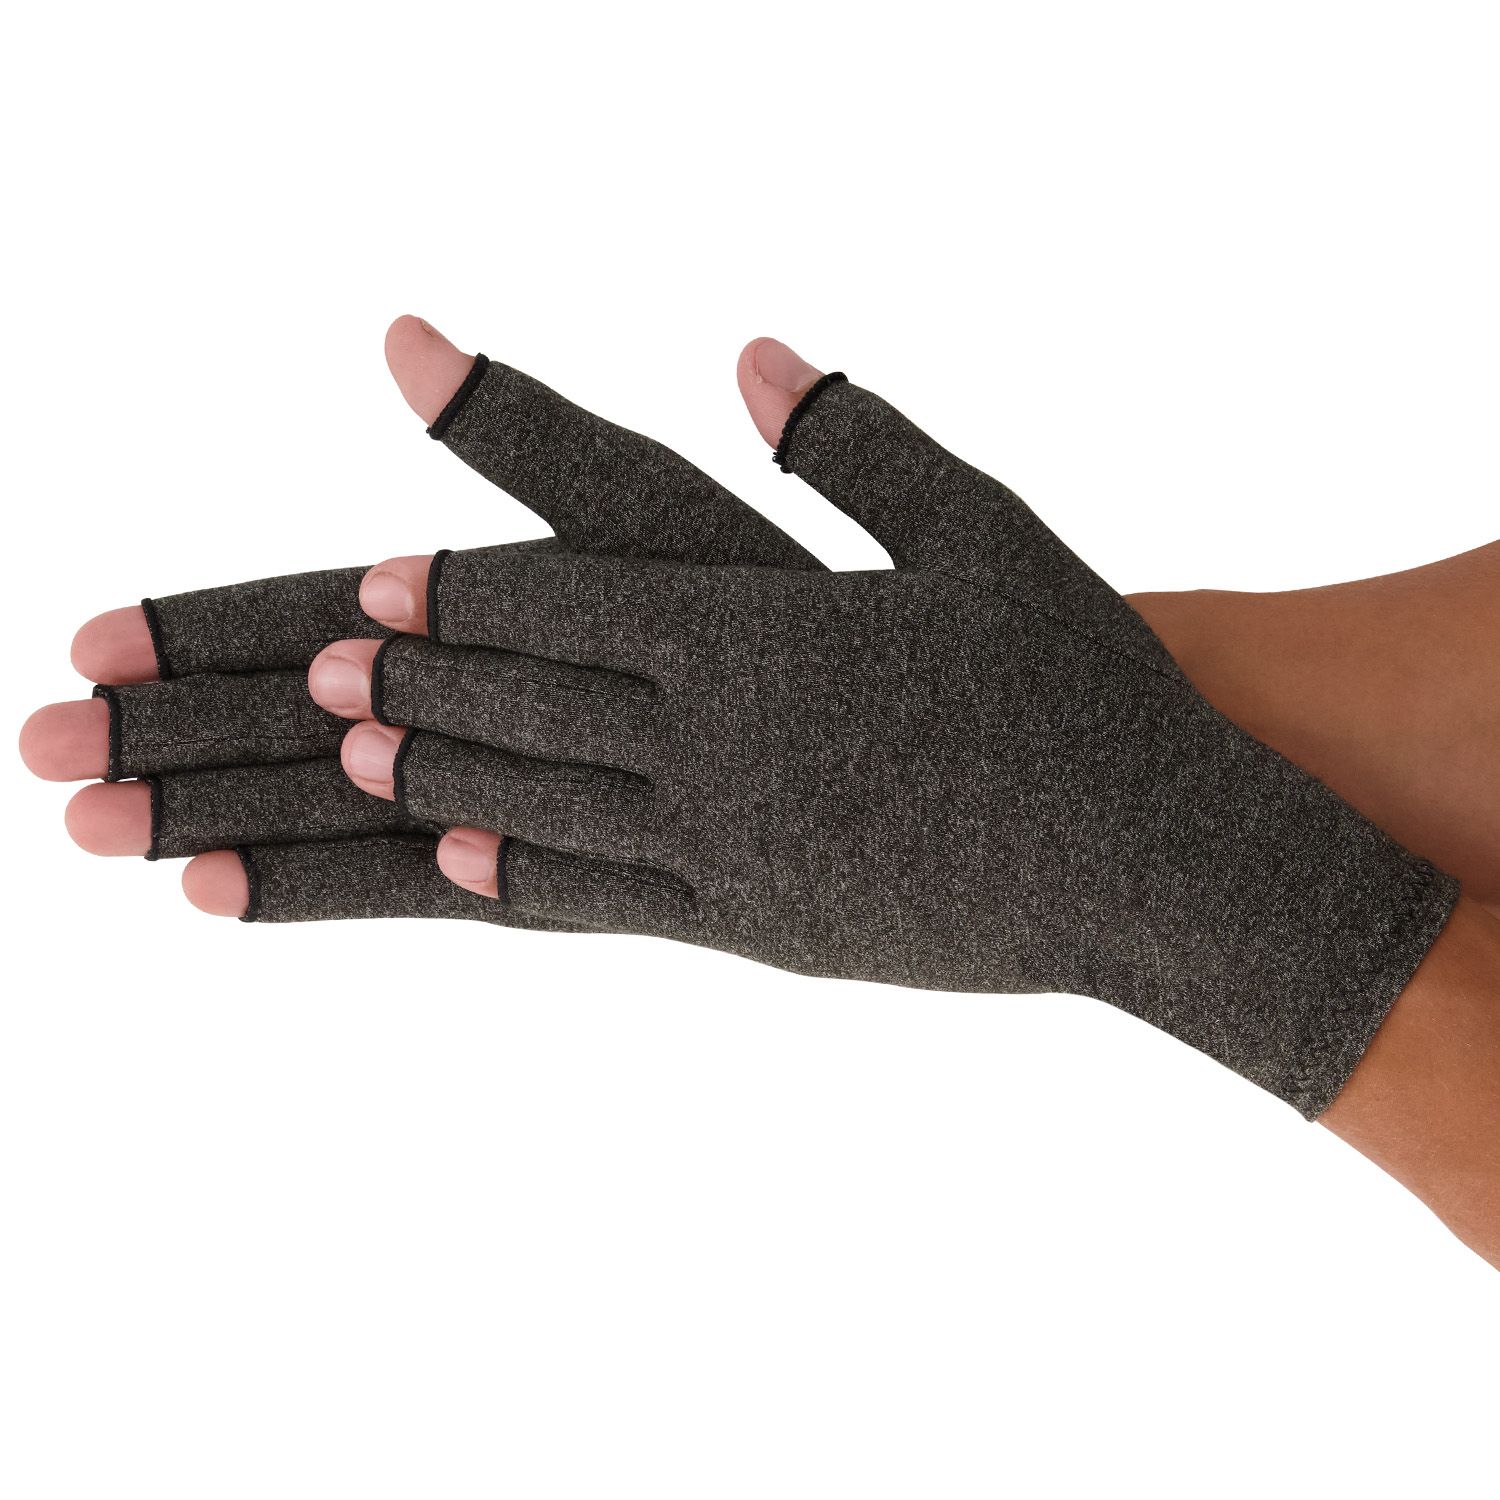 dunimed rheumatoid arthritis osteoarthritis gloves in skin colour